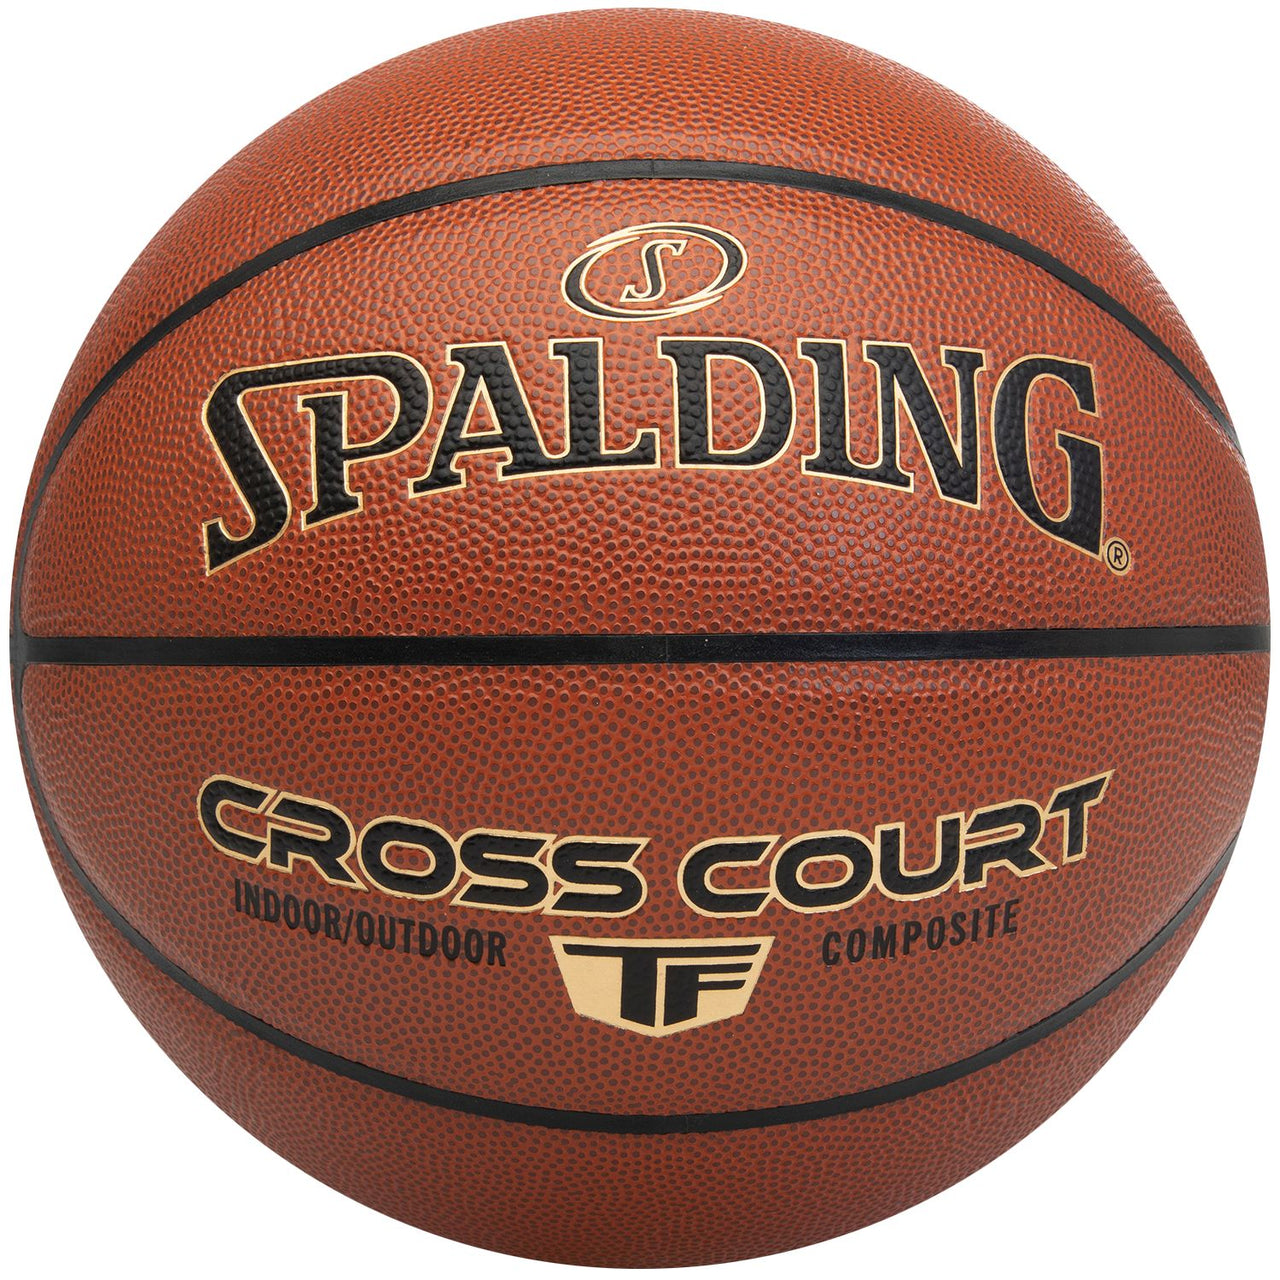 Spalding Cross Court Official Basketball